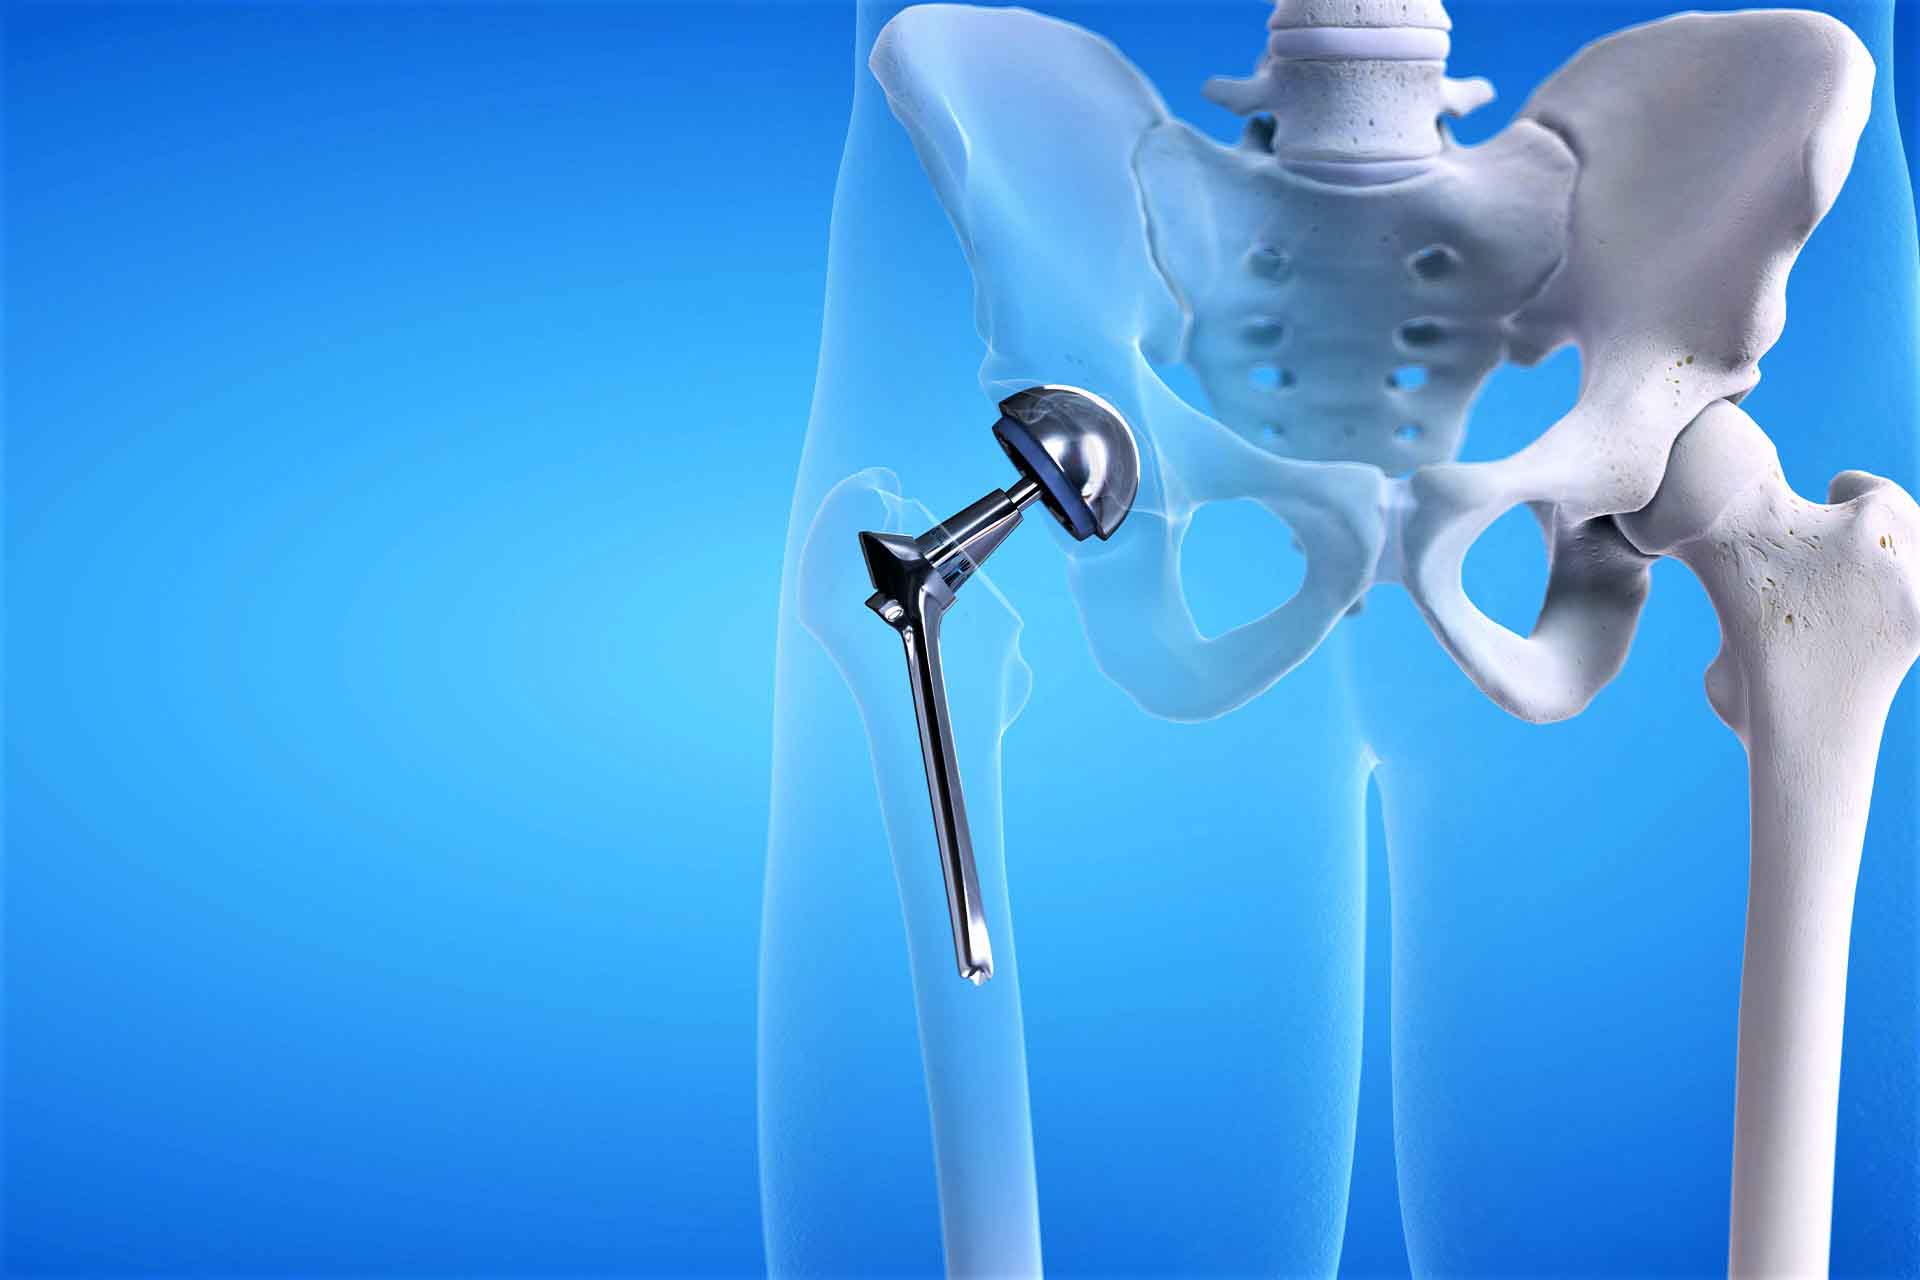 Ответы к тестам НМО: "Осложнения, связанные с внутренними ортопедическими протезными устройствами имплантатами и трансплантатами тазобедренного сустава (по утвержденным клиническим рекомендациям)"